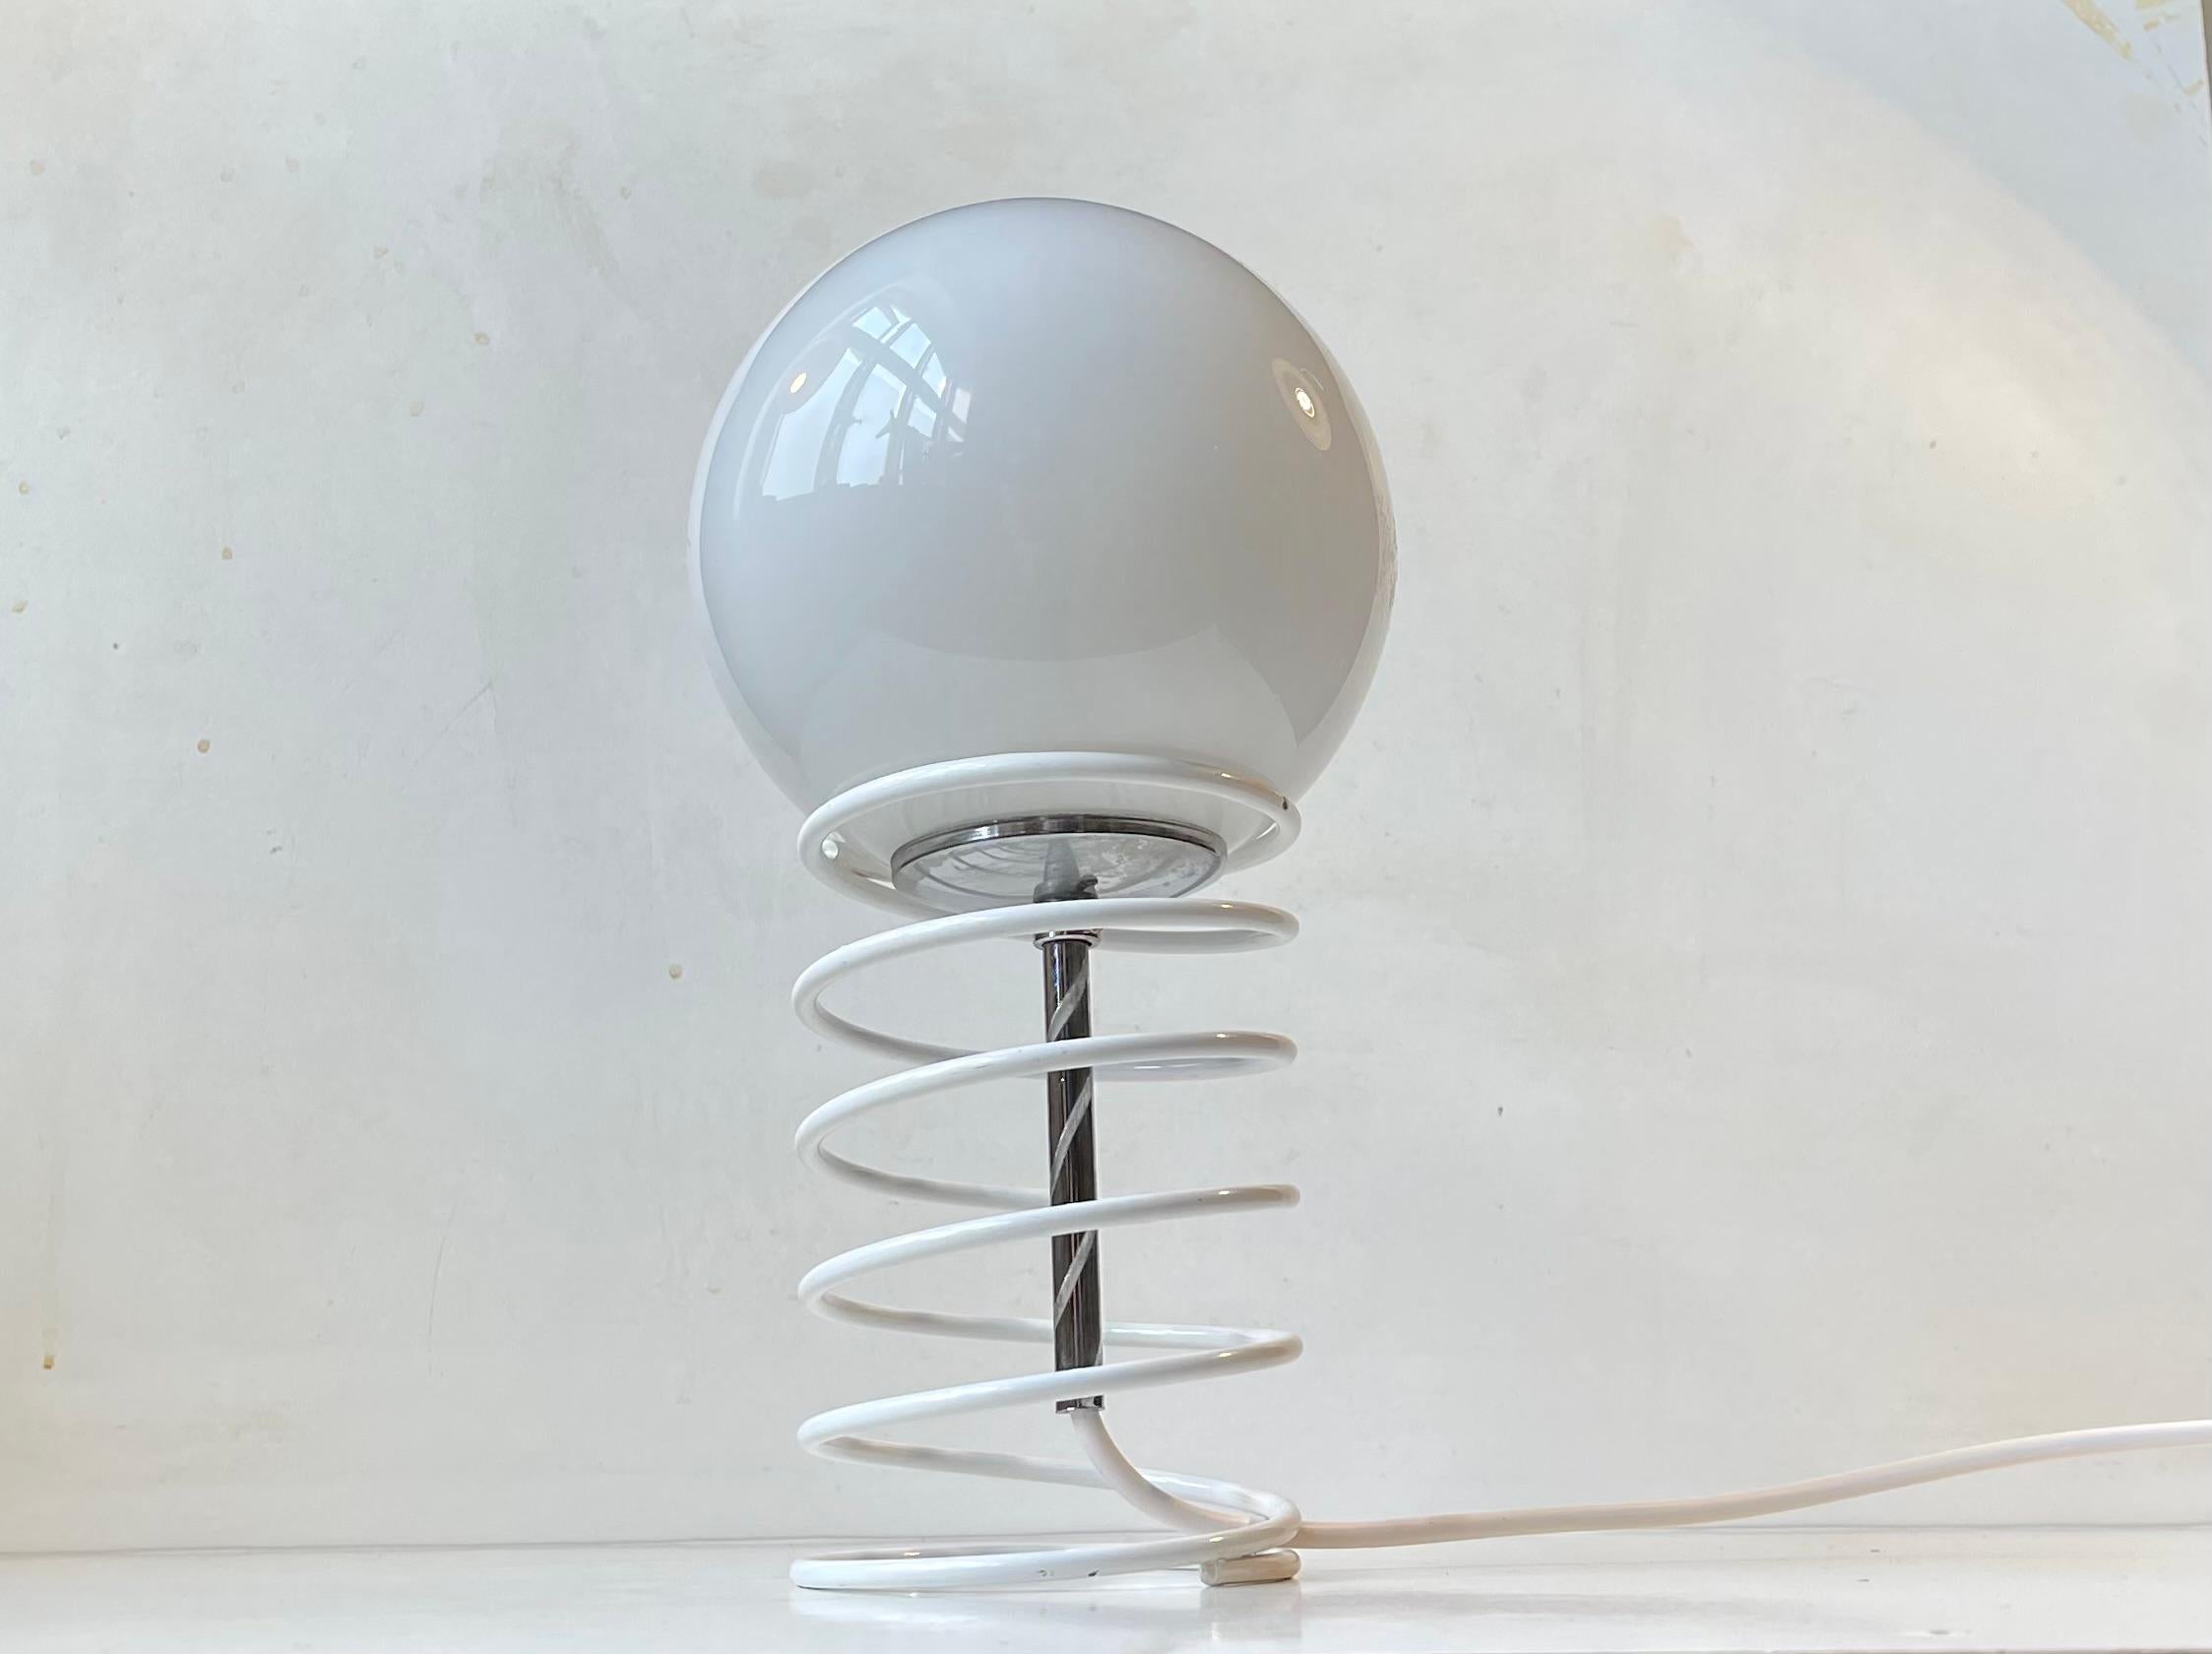 Une petite lampe de table simple composée d'un ressort en acier laqué blanc retenant librement une sphère en verre opalin dans un cadre chromé. Il a été fabriqué par Bell au Danemark vers 1980-90. Son style rappelle celui de Verner Panton et de Fase